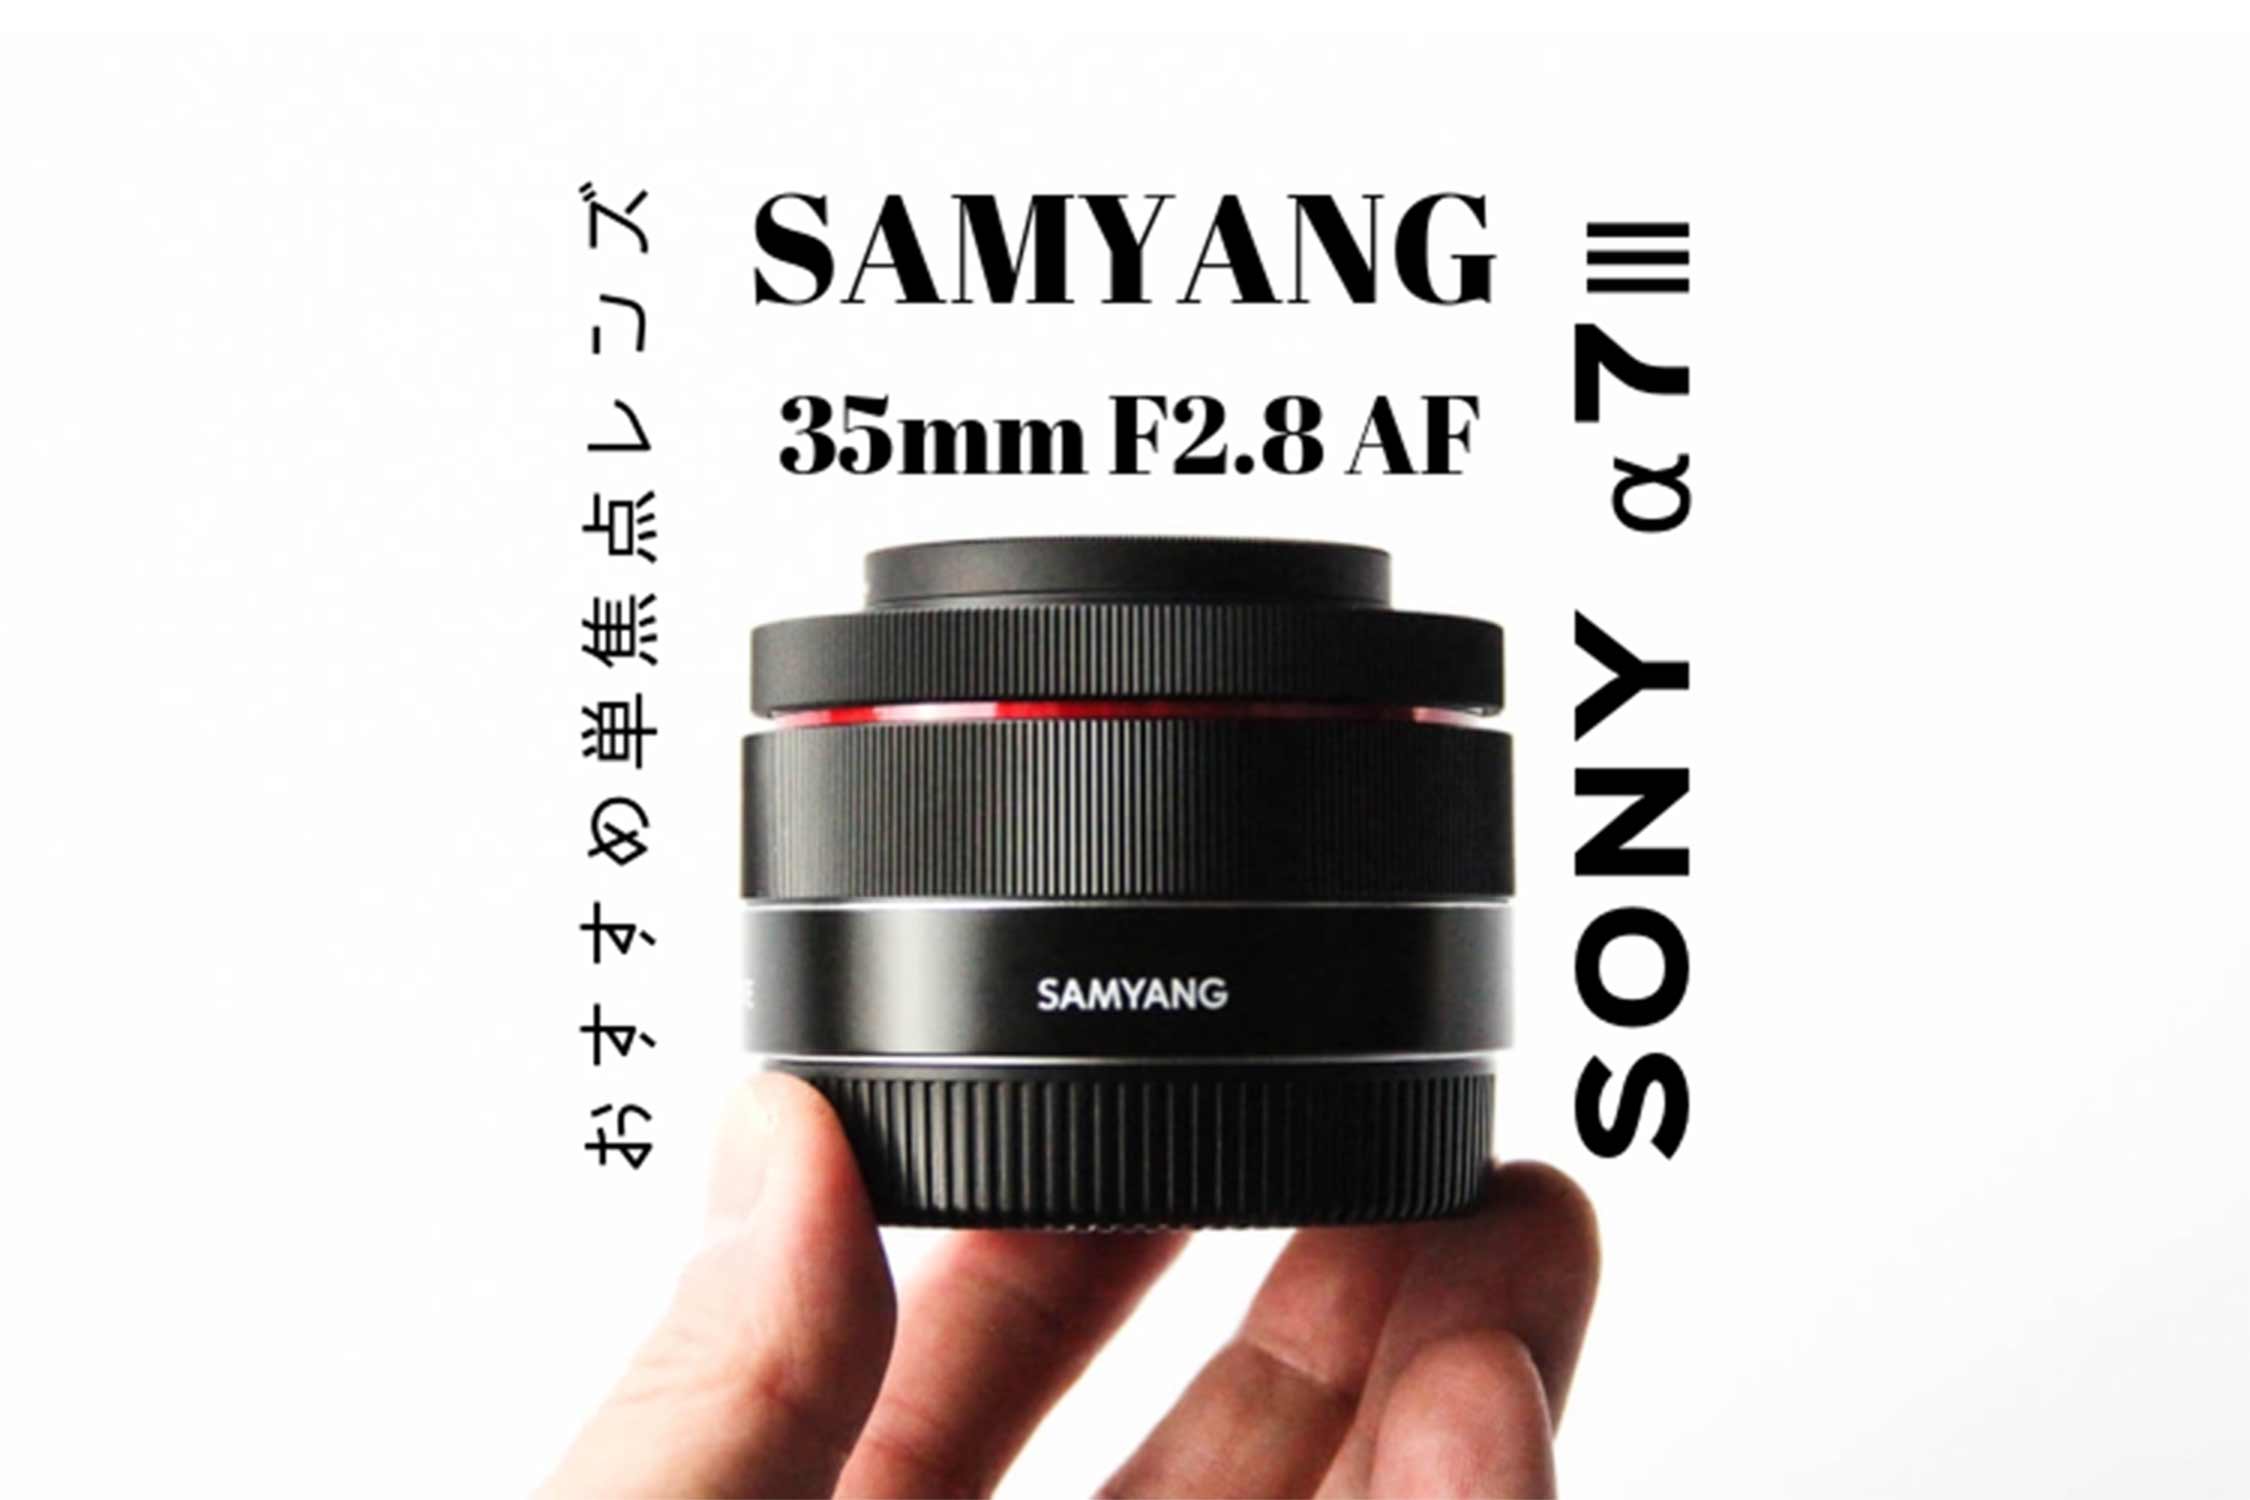 SAMYANG 35mm F2.8 AF 記事 アイキャッチ